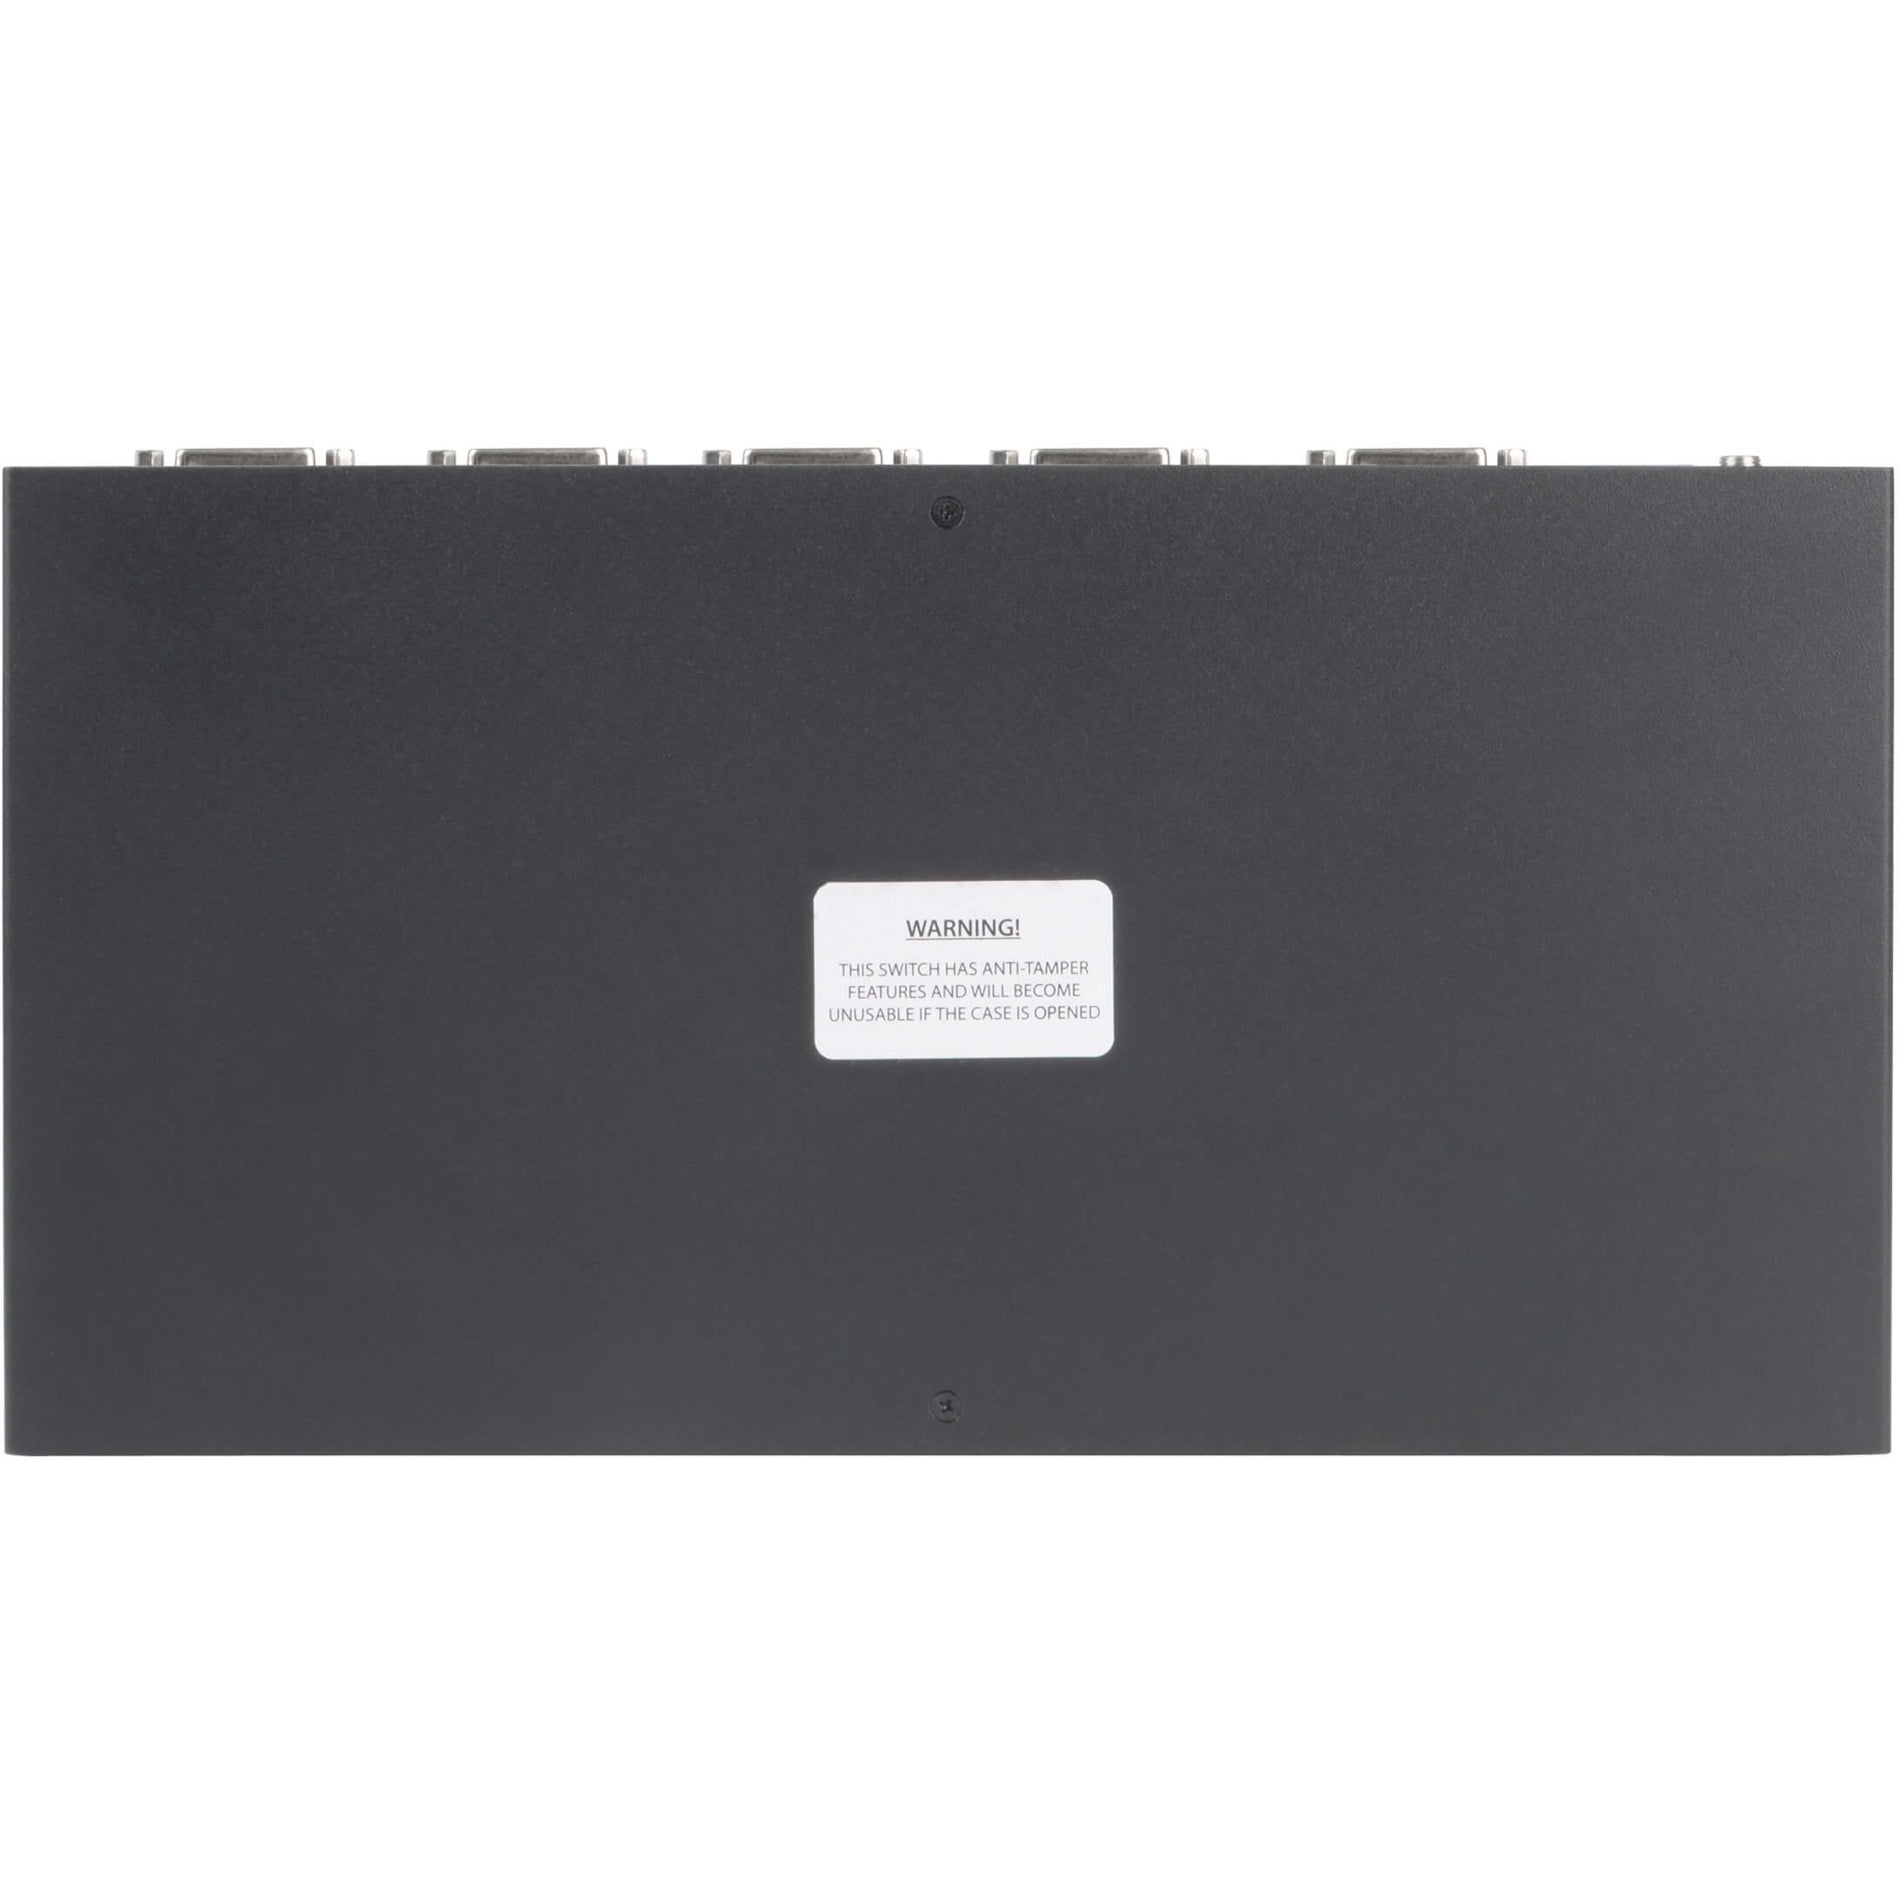 Tripp Lite B002-DV1AC4 4-Port NIAP PP3.0-Certified DVI-I KVM Switch, 2560 x 1600 Resolution, 3 Year Warranty